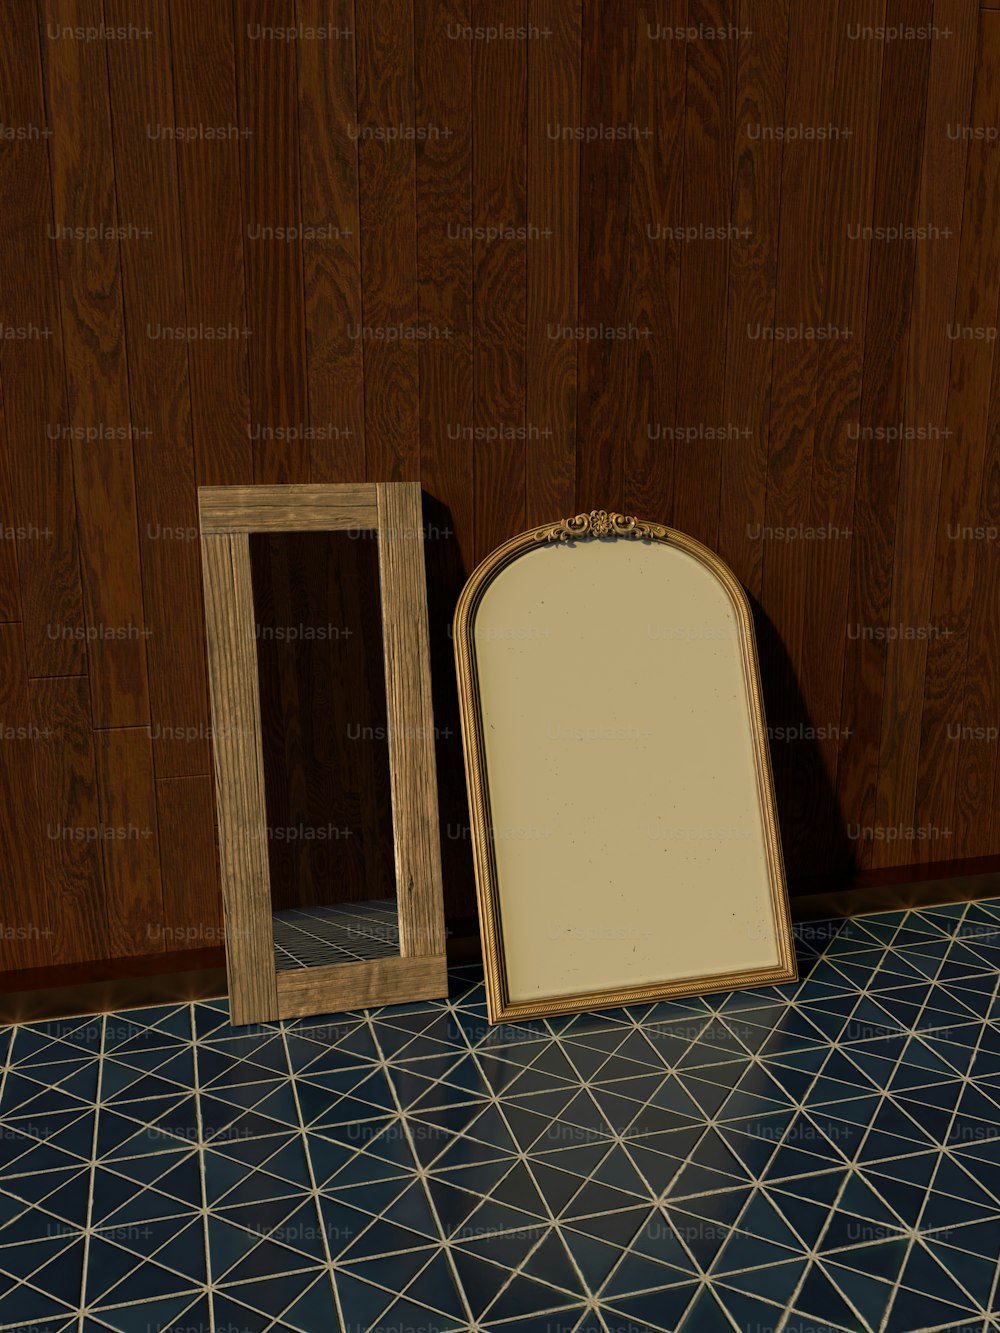 um espelho sentado em um piso de azulejos ao lado de uma moldura de madeira